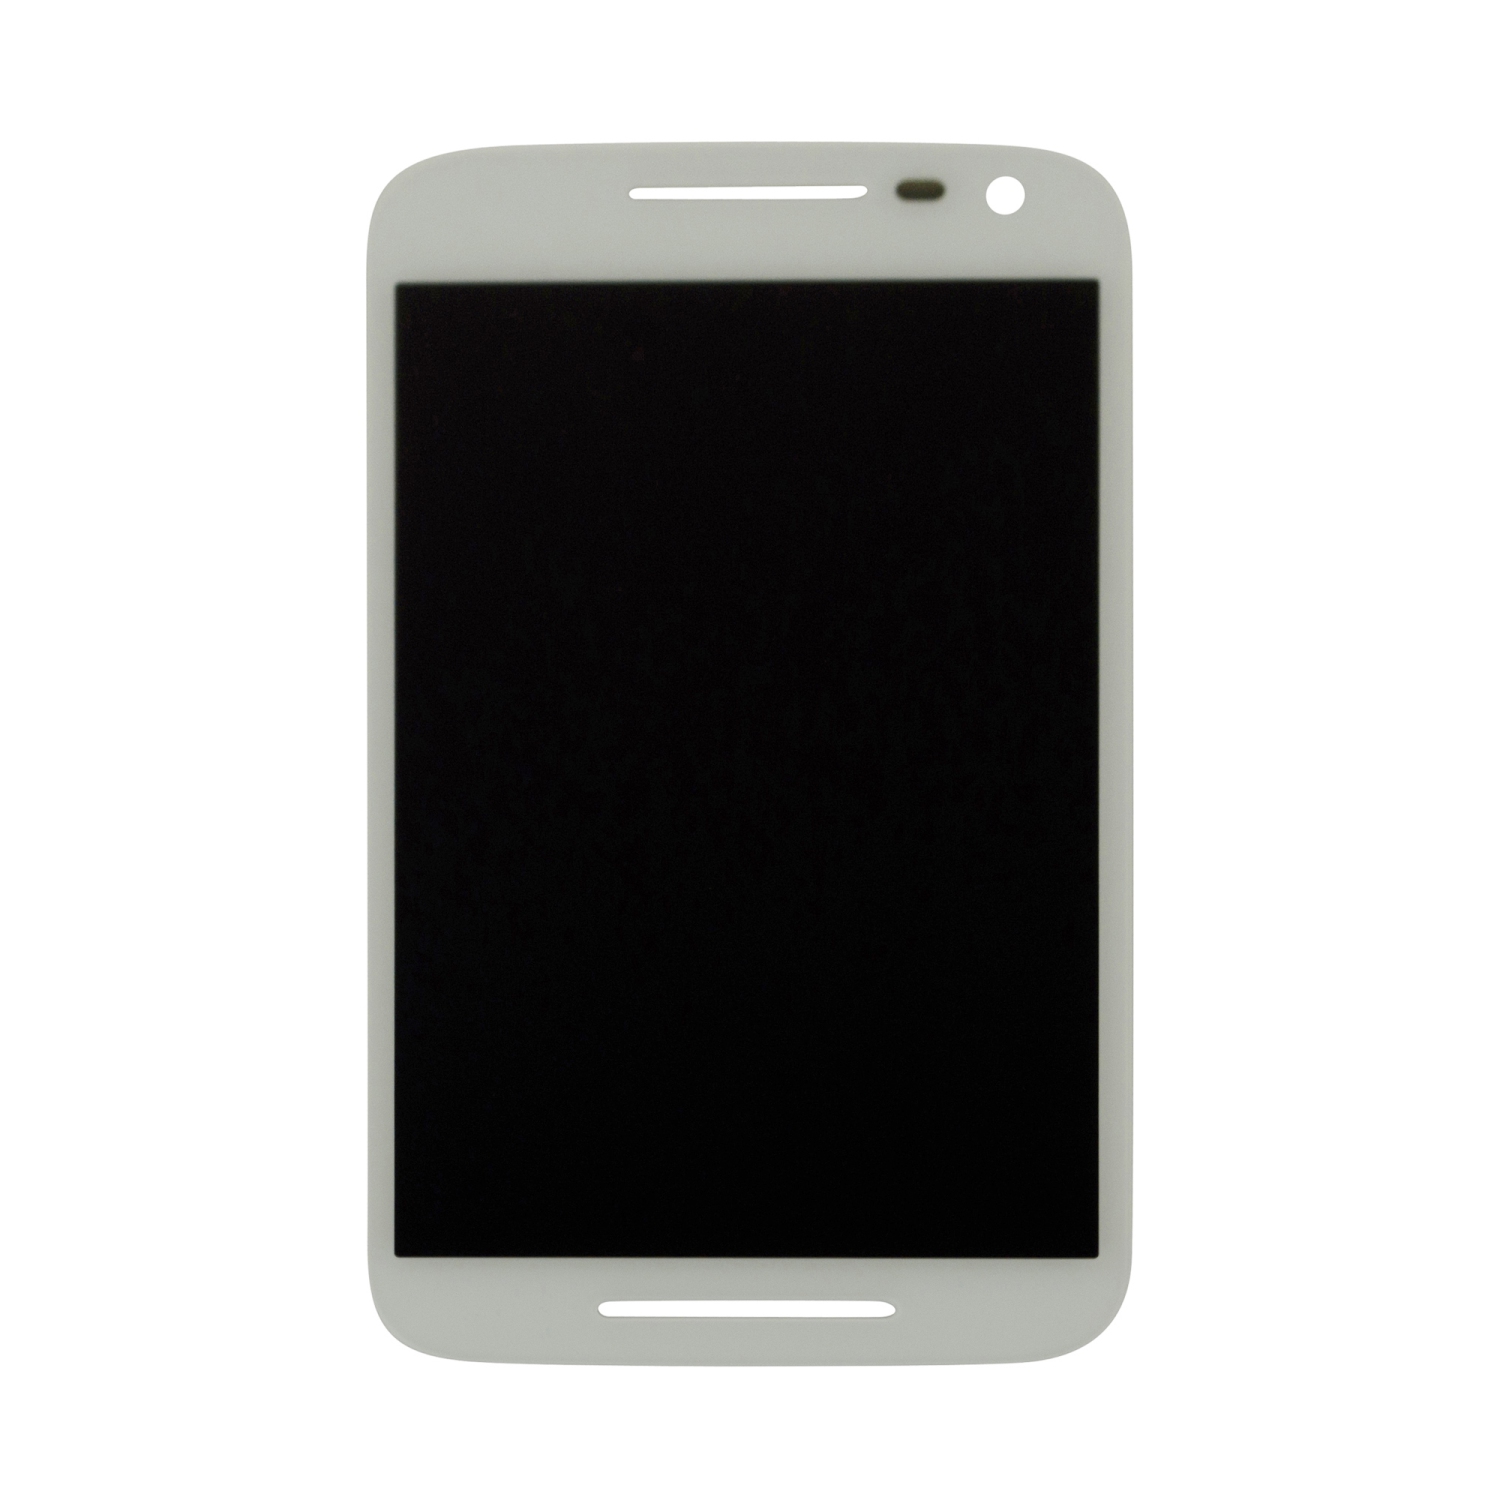 Motorola Moto G3 (2015) LCD Screen and Digitizer Assembly Replacement XT1552 XT1550 XT1548 XT1541 XT1540 - White